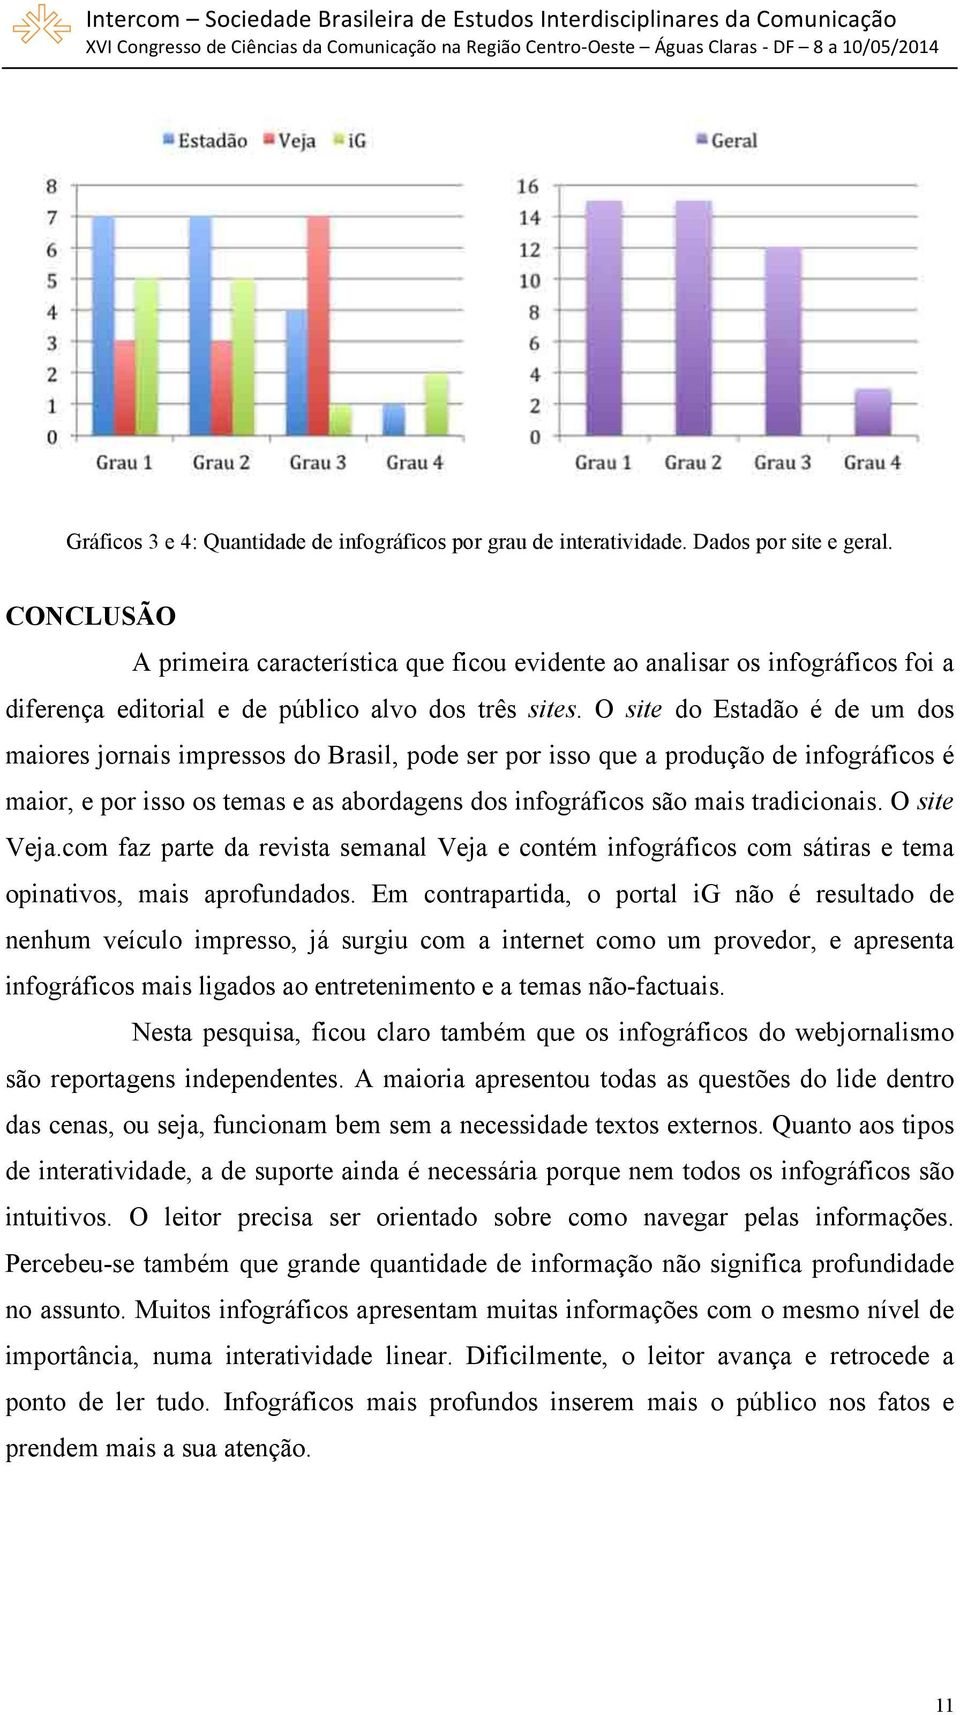 O site do Estadão é de um dos maiores jornais impressos do Brasil, pode ser por isso que a produção de infográficos é maior, e por isso os temas e as abordagens dos infográficos são mais tradicionais.